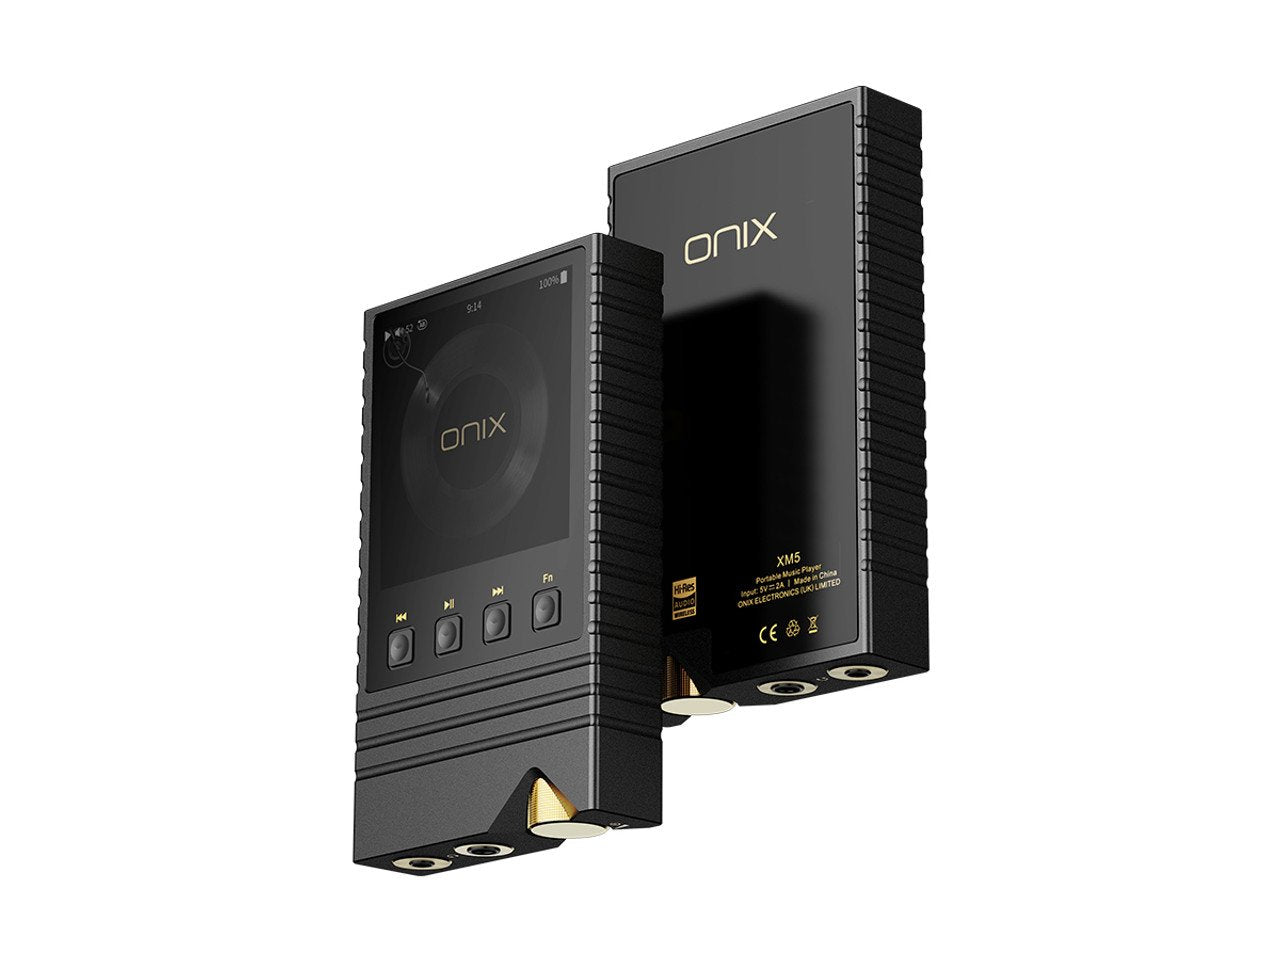 Onix Overture XM5